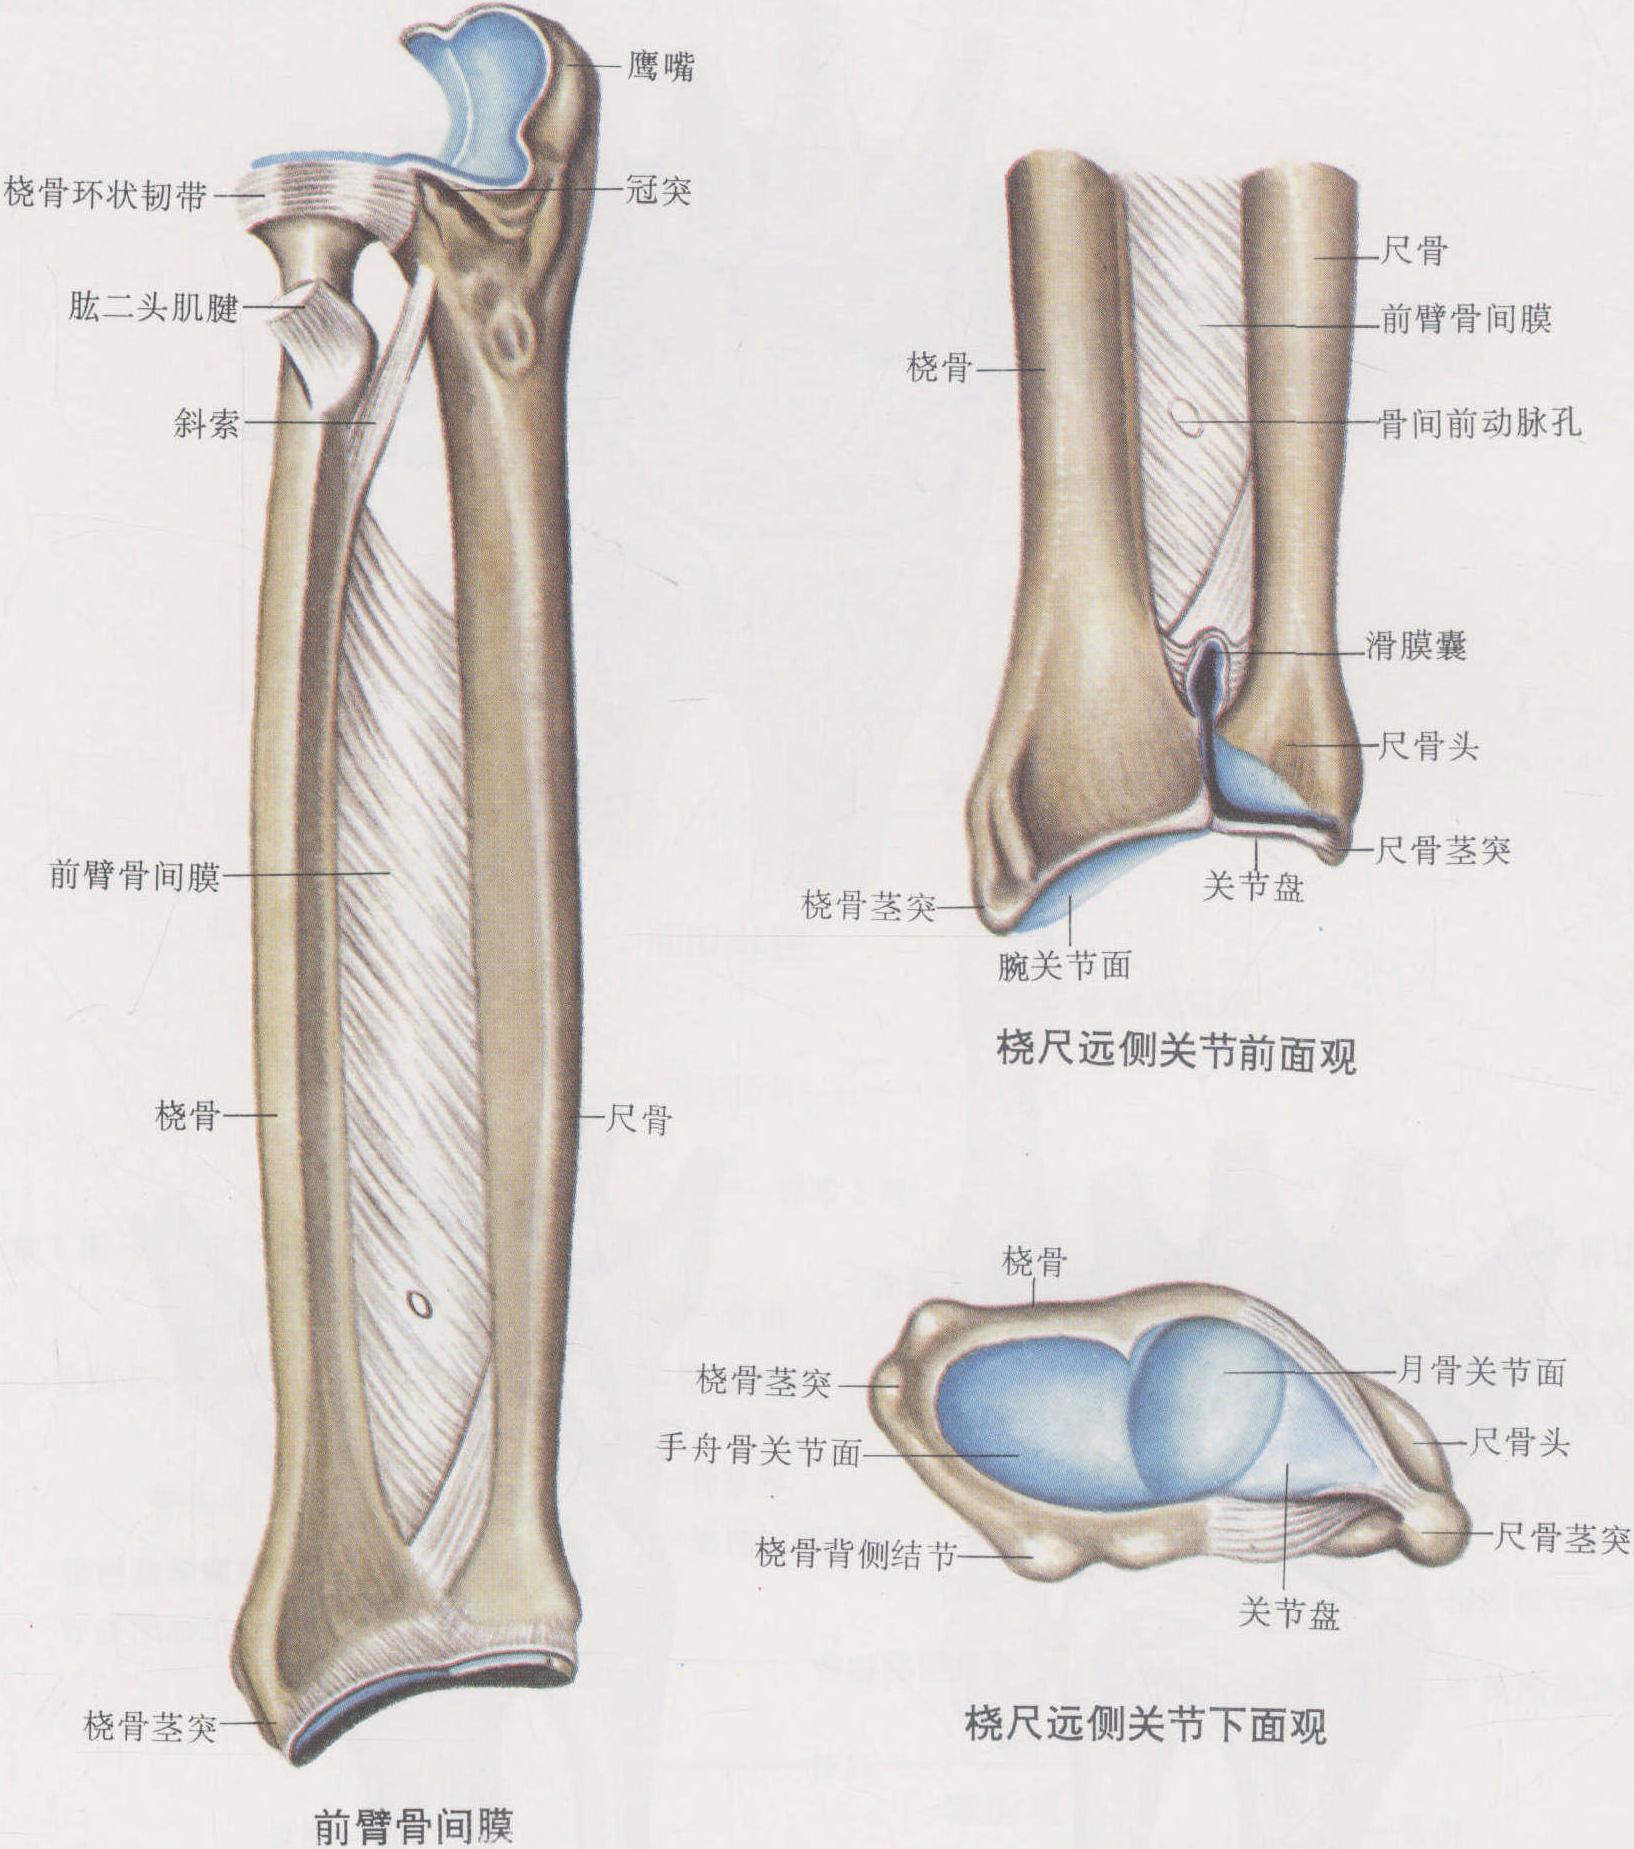 图4-41 腕关节运动轴-手外科解剖学图鉴-医学